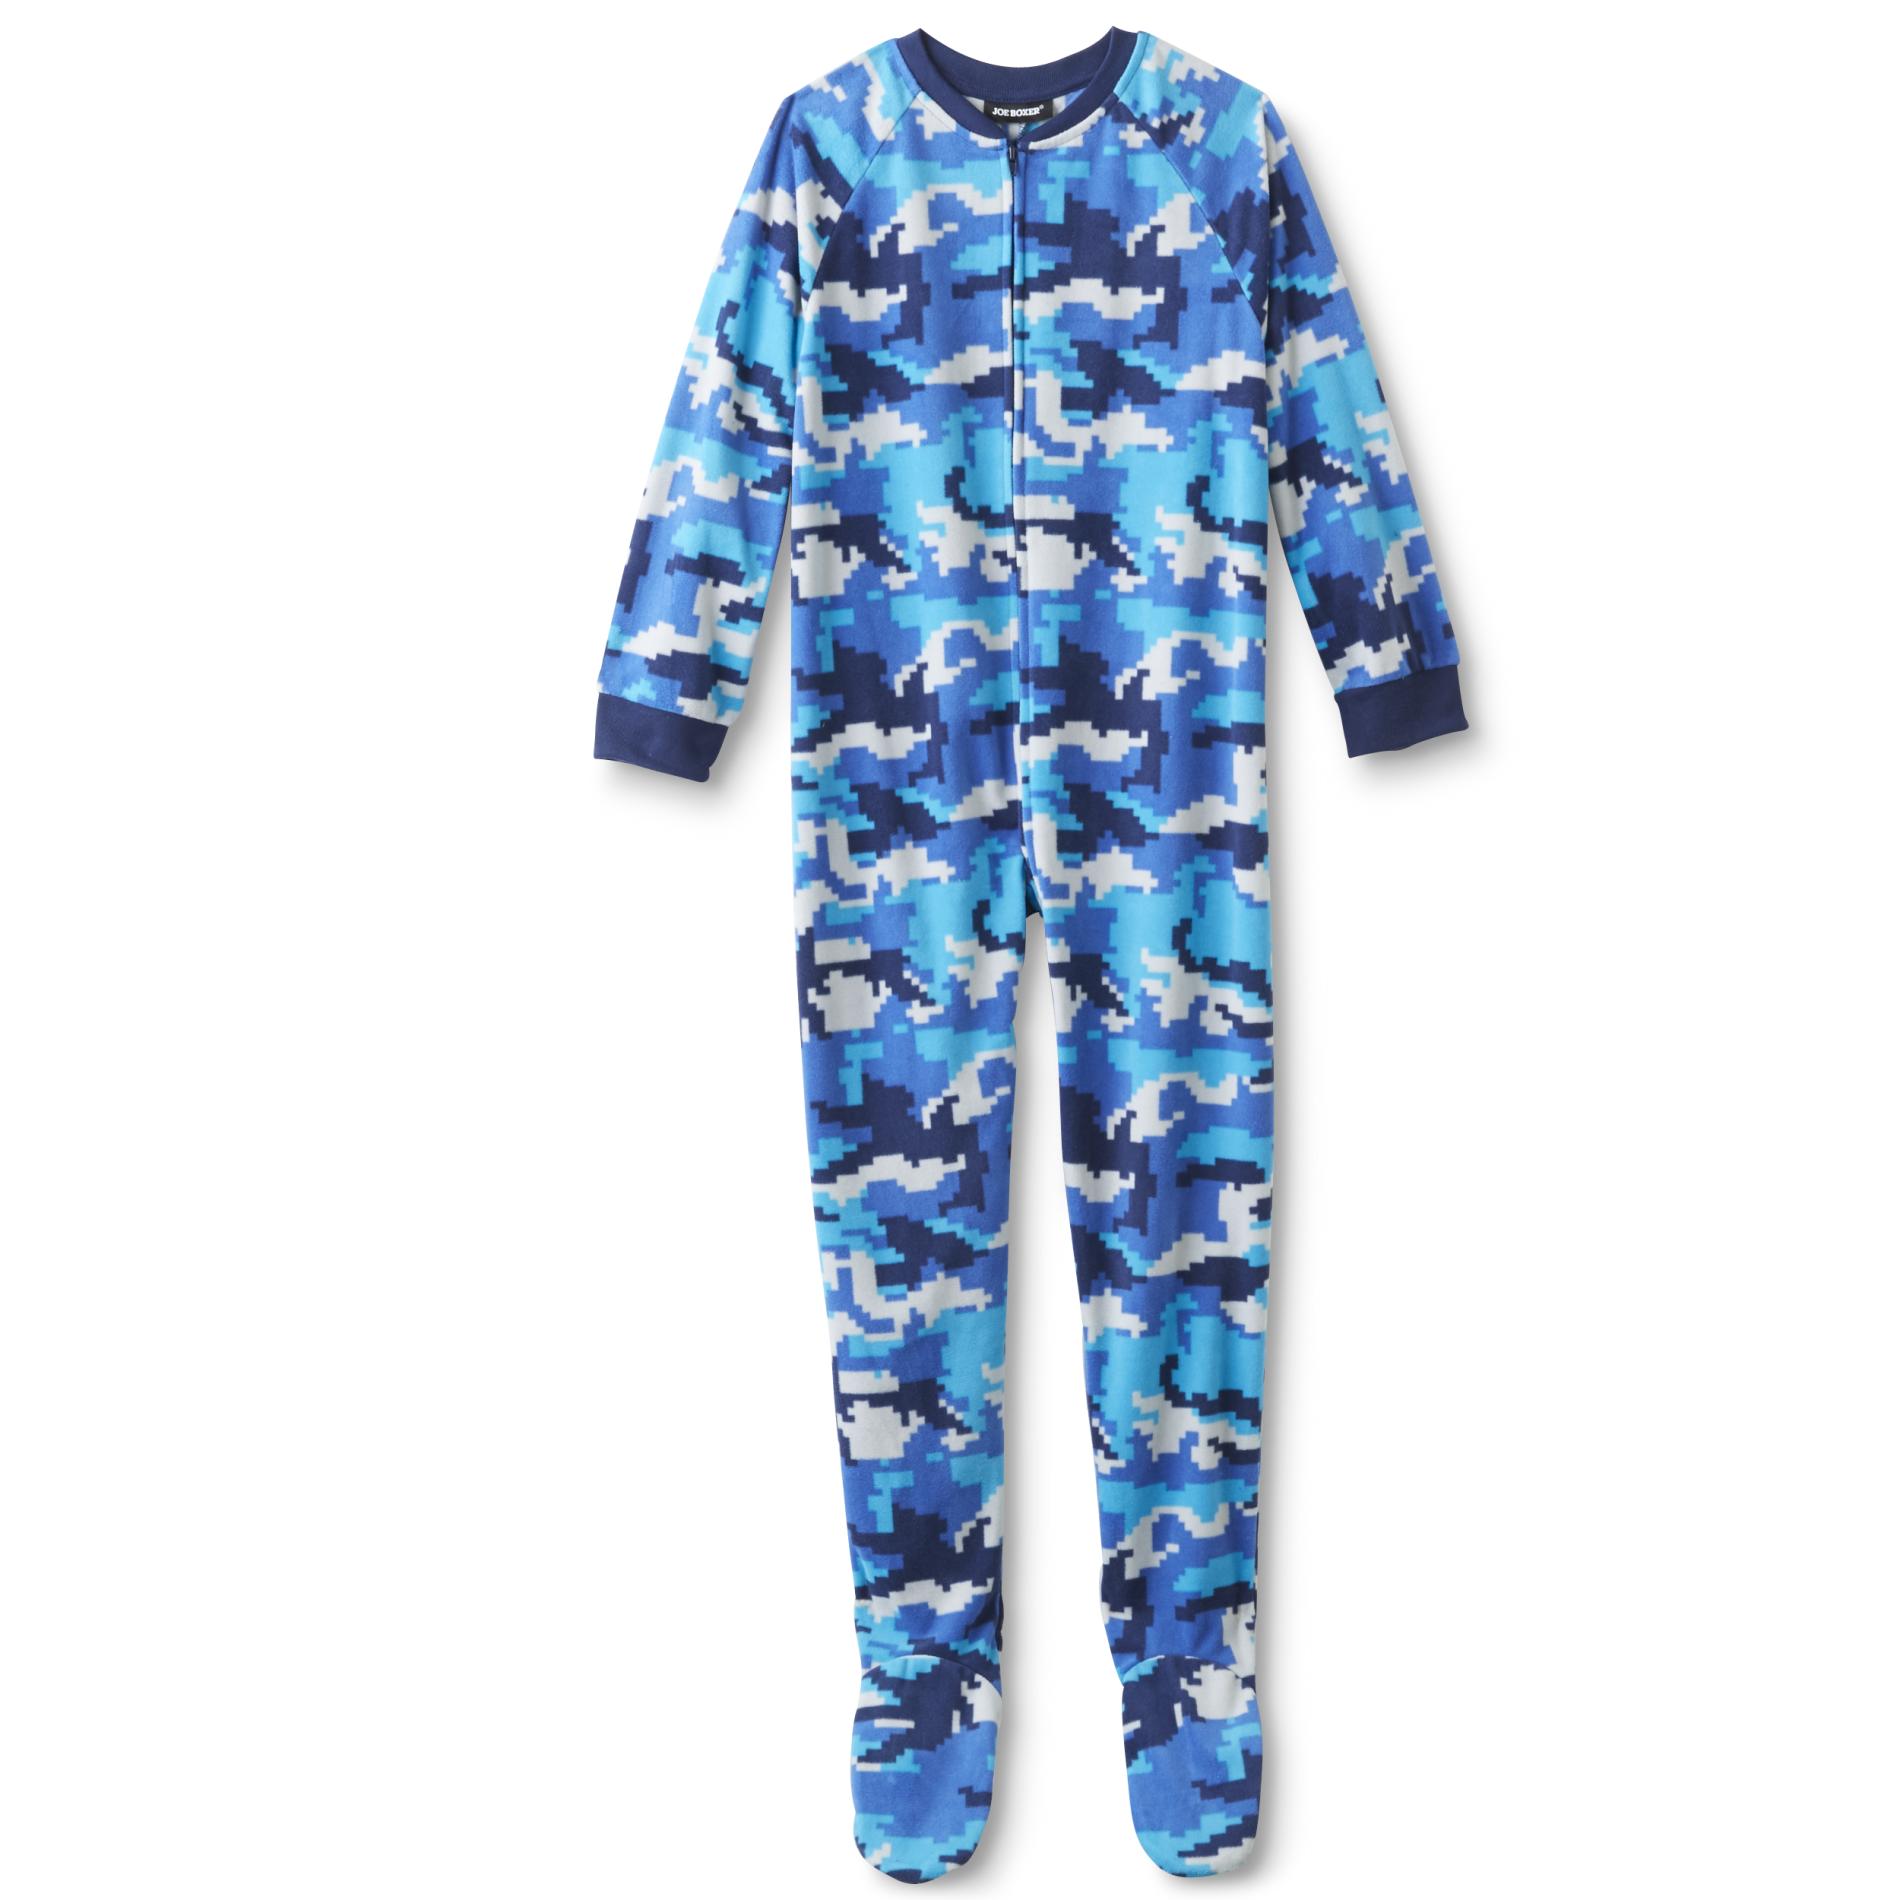 Joe Boxer Boys' One-Piece Microfleece Pajamas - Digital Camo